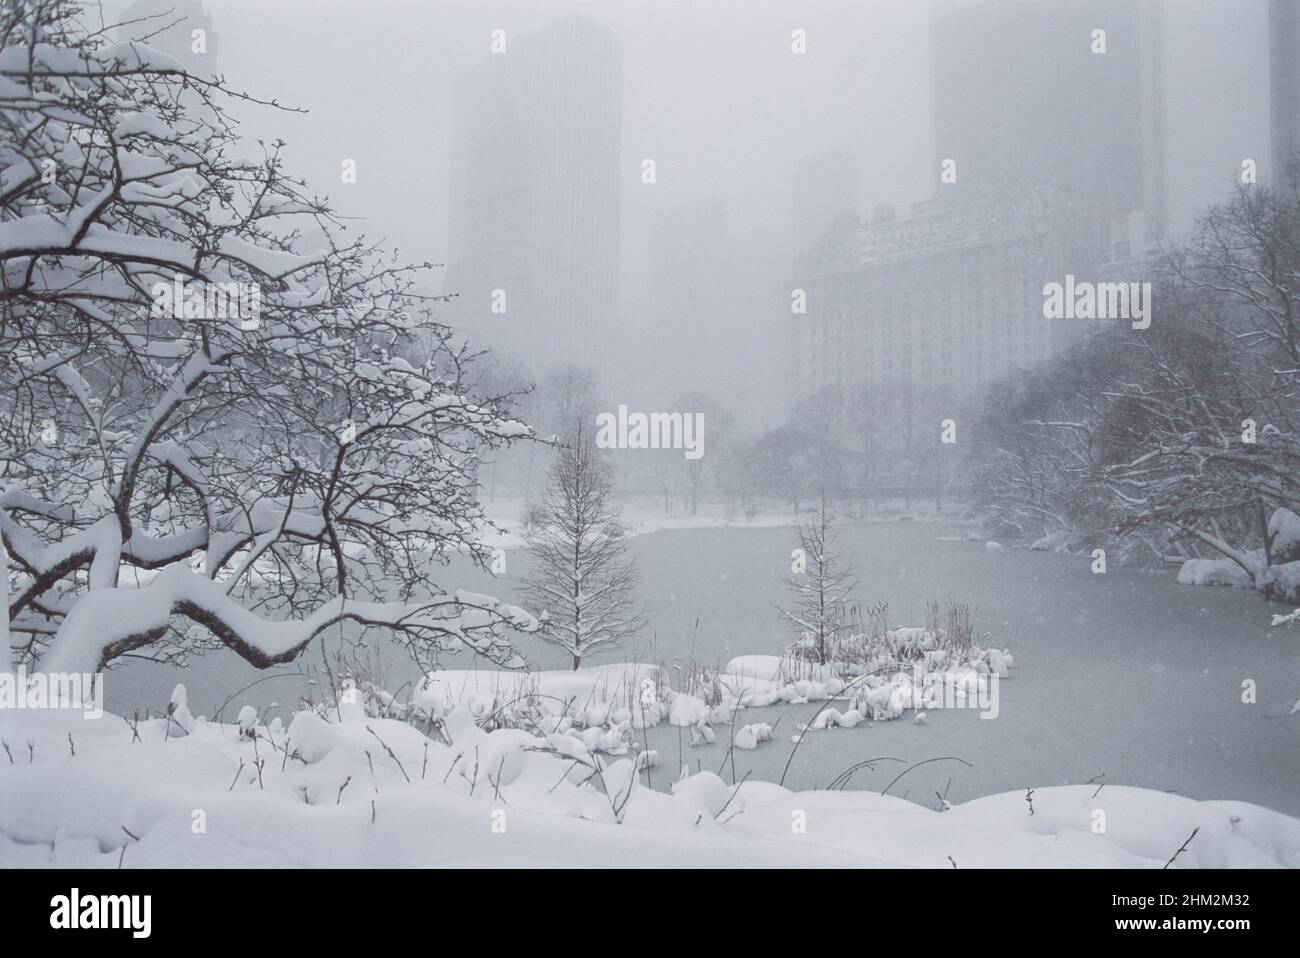 Central Park, New York, Snow and the Lake. Starker Schneefall bedeckt Bäume und Nebel umhüllt die Wolkenkratzer von Midtown Manhattan. Skyline von New York City. USA Stockfoto